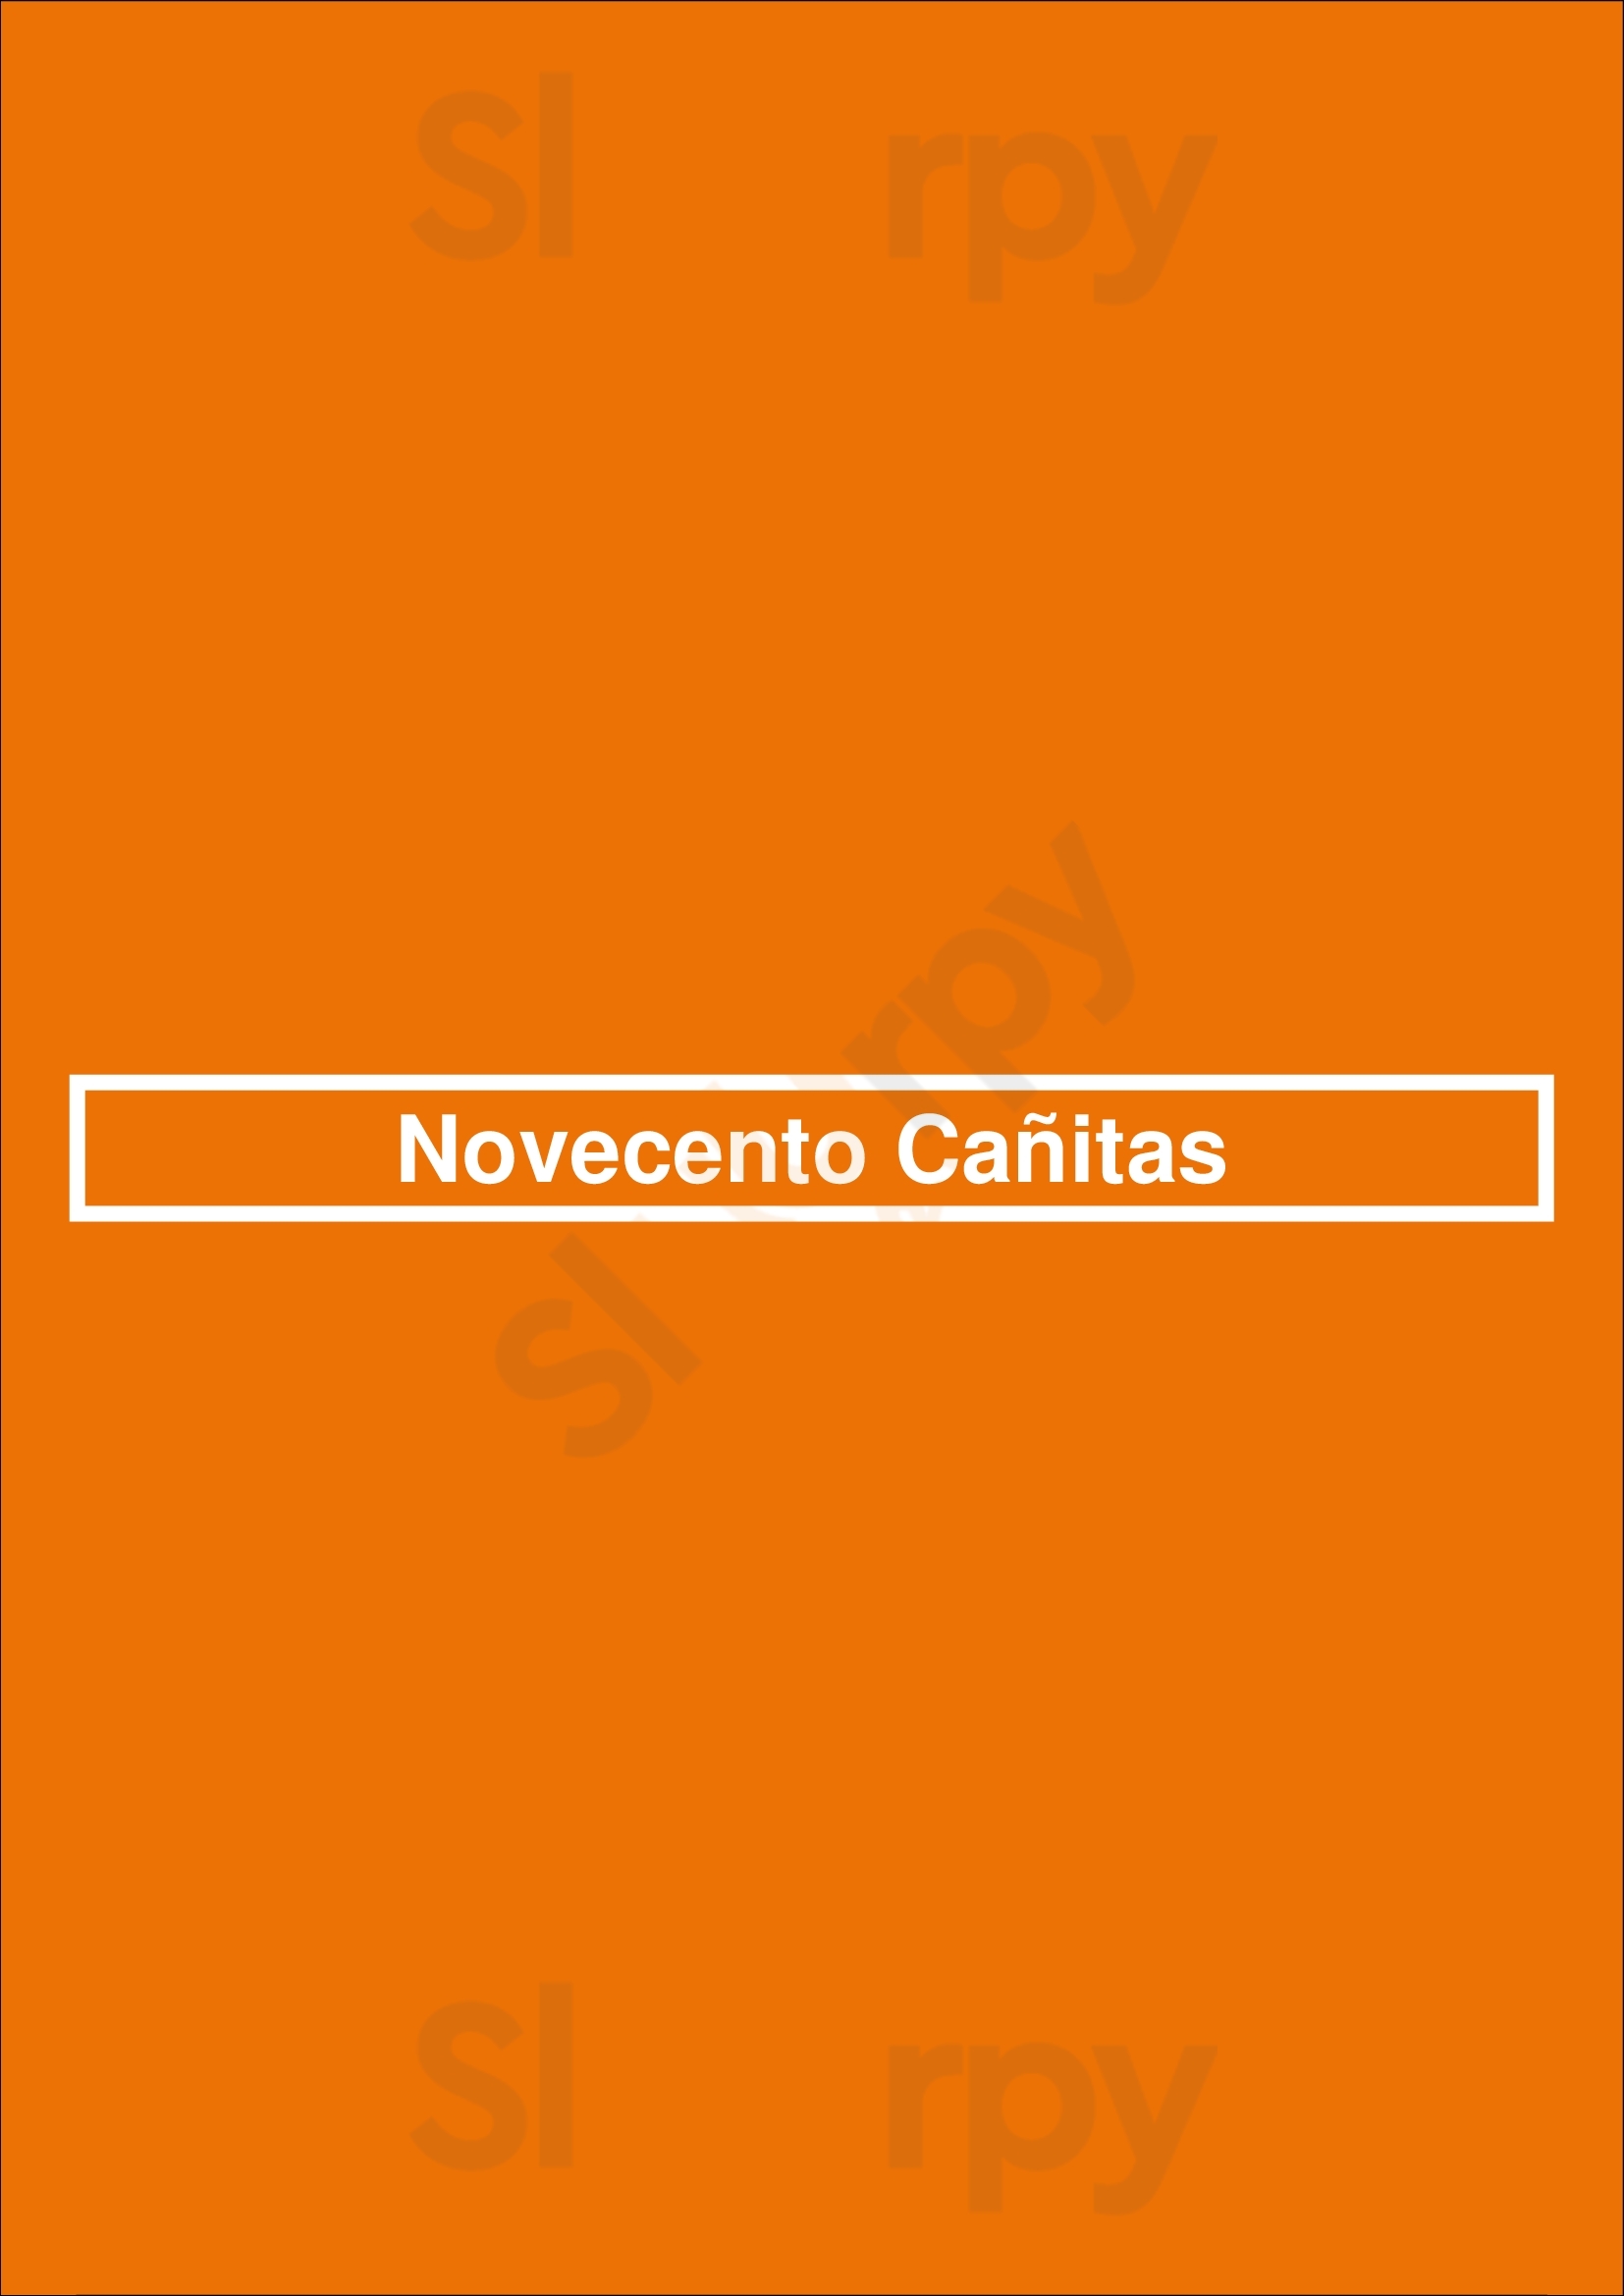 Novecento Cañitas Buenos Aires Menu - 1